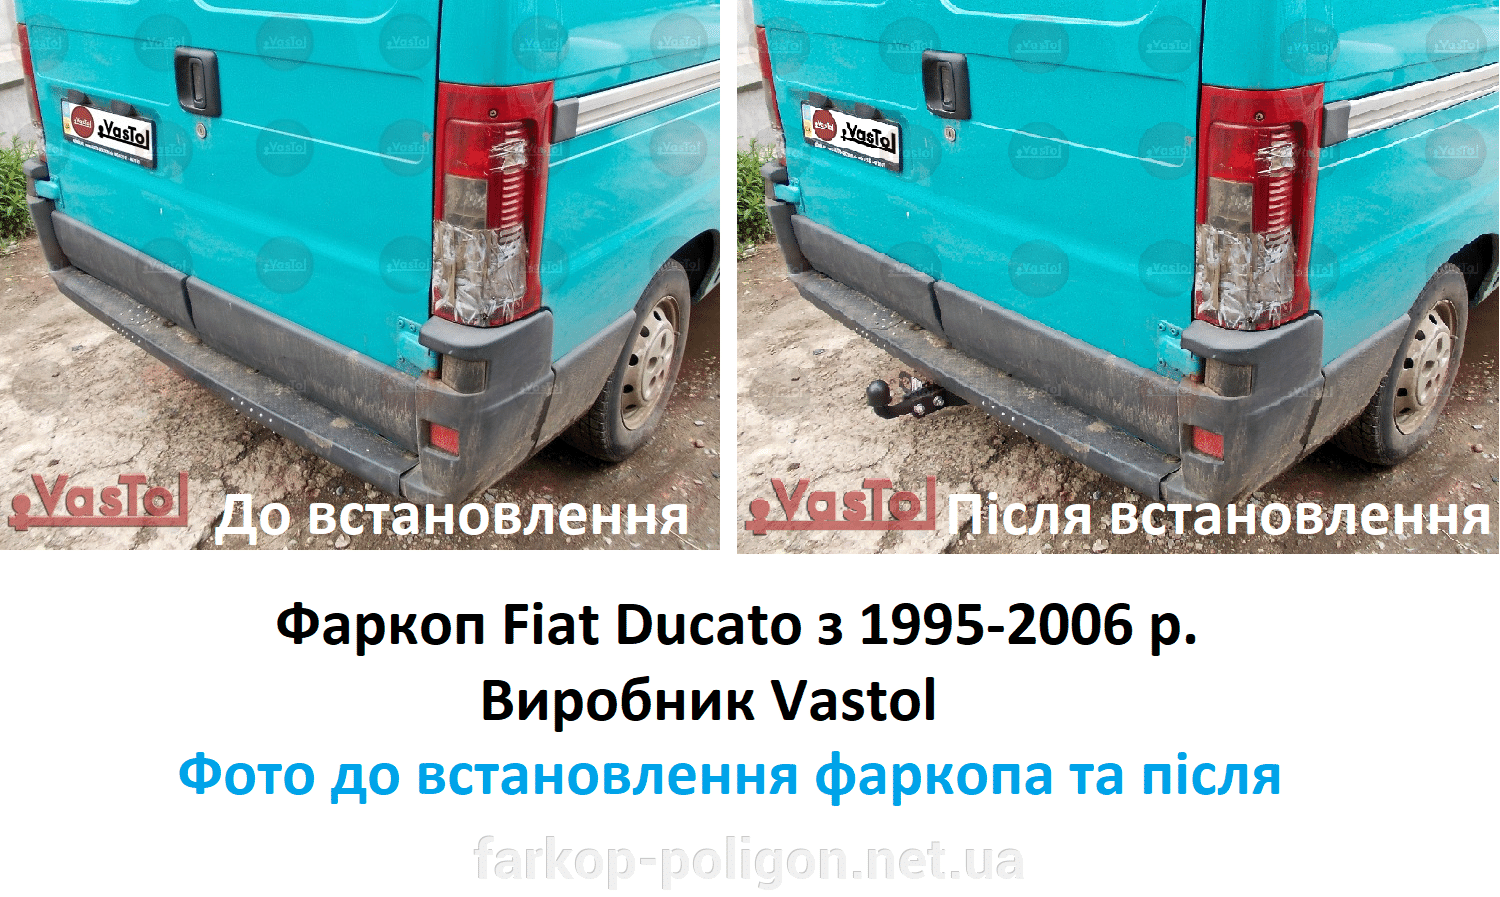 фото до та ппісля встановлення фаркоп Fiat Ducato з 1995-2006 р. виробництва Вастол (Vastol)